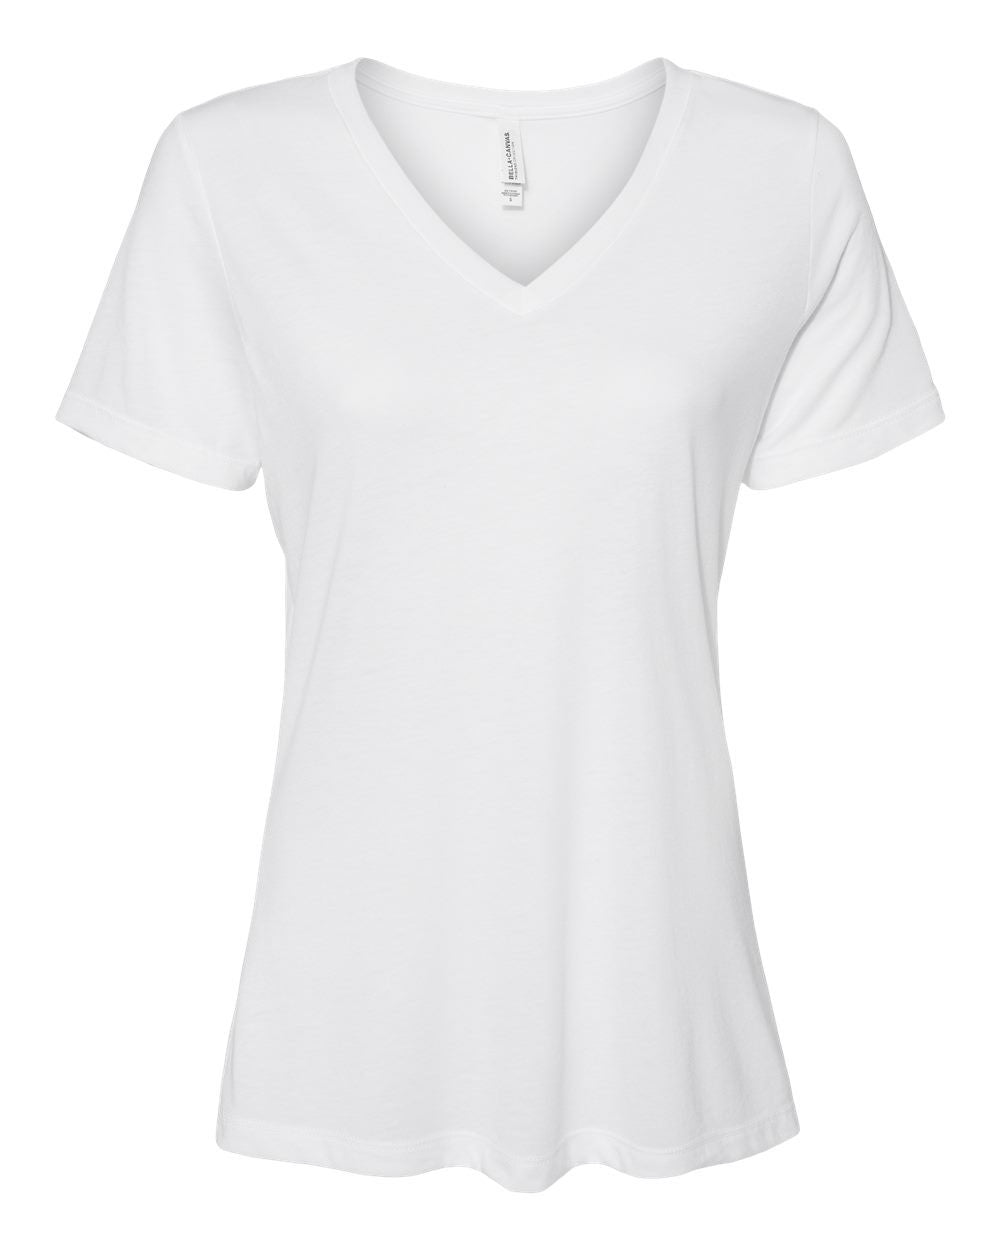 Titan Elite Design 2 V-neck T-Shirt